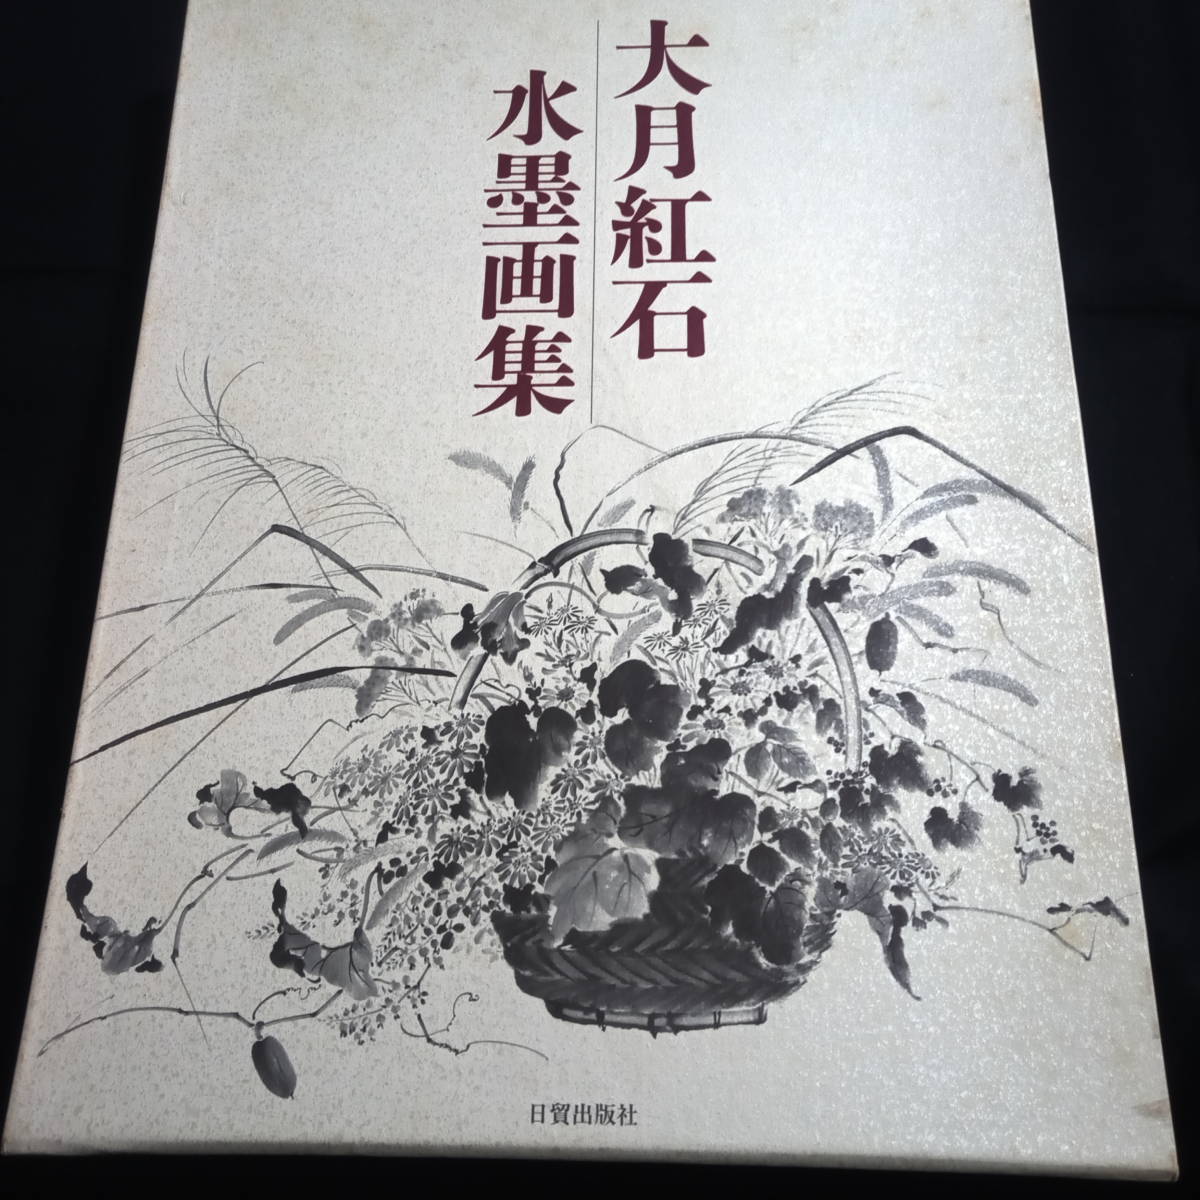 ओत्सुकी बेनिसेकी स्याही पेंटिंग संग्रह, चित्रकारी, कला पुस्तक, कार्यों का संग्रह, कला पुस्तक